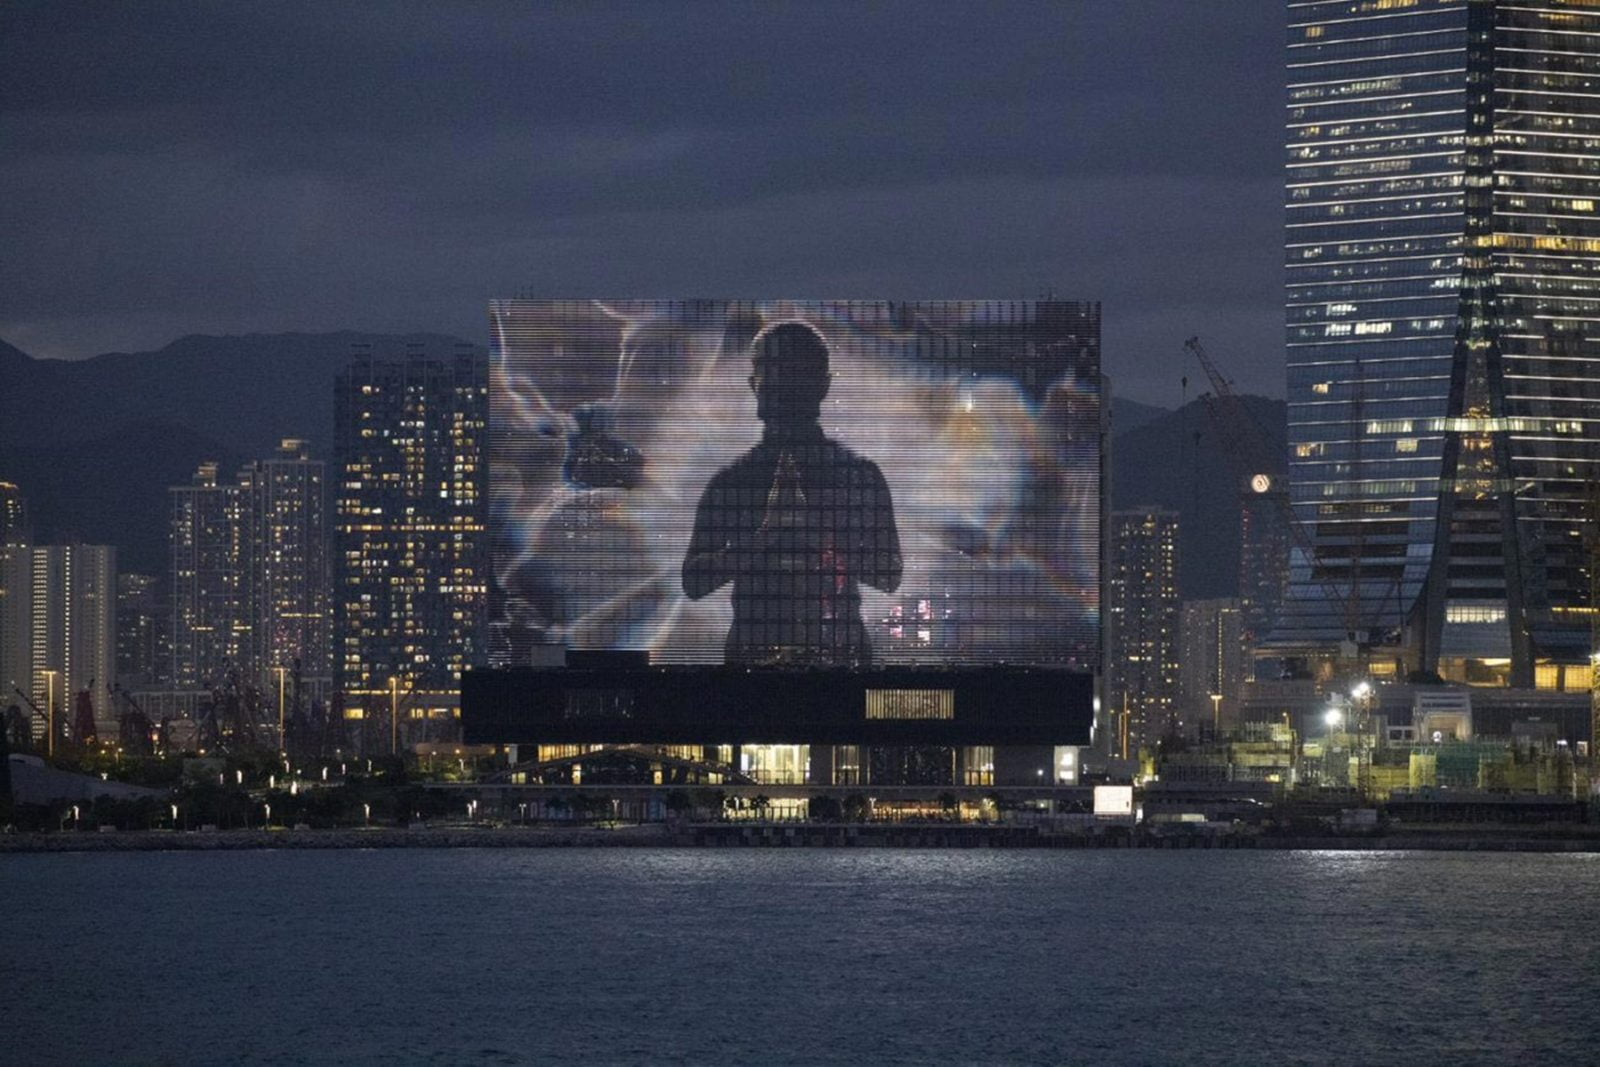 มหาอำนาจด้านงานศิลป์ ‘ฮ่องกง’ ทะยานสู่อนาคตด้วย ‘ดิจิทัลอาร์ต’/ Hong Kong heads into the Future with Digital Art